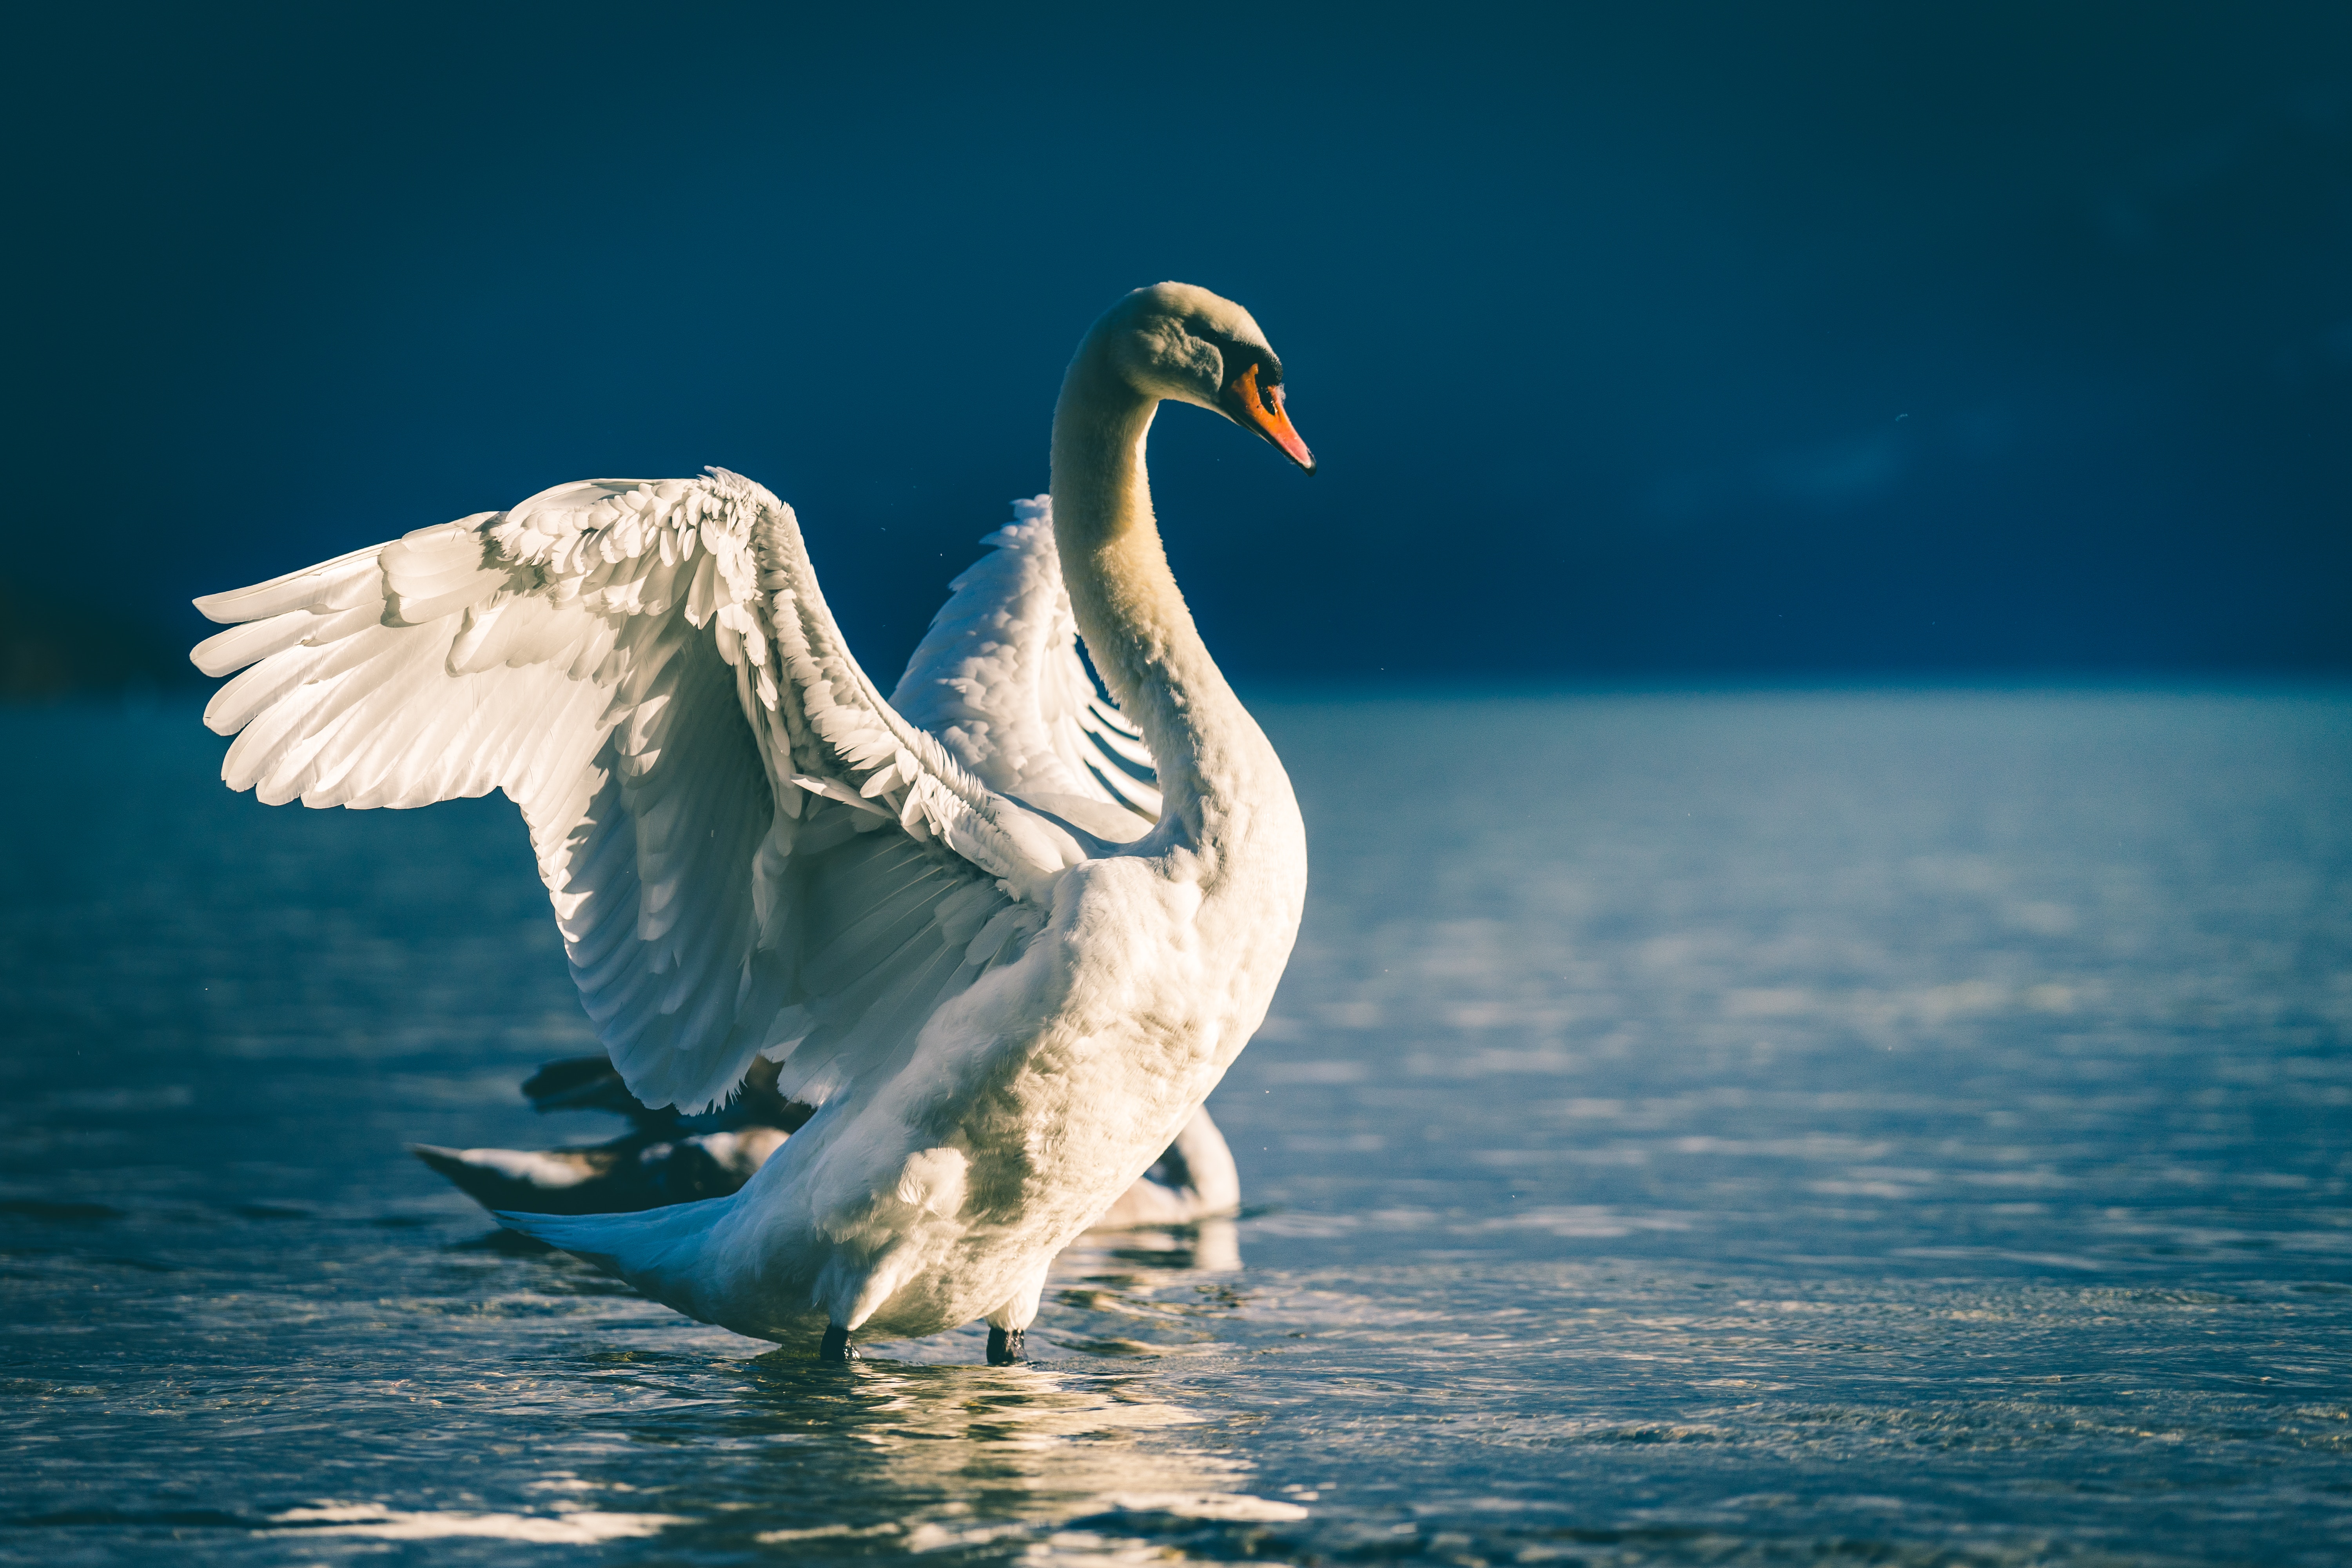 Wallpapers geese ducks swan on the desktop